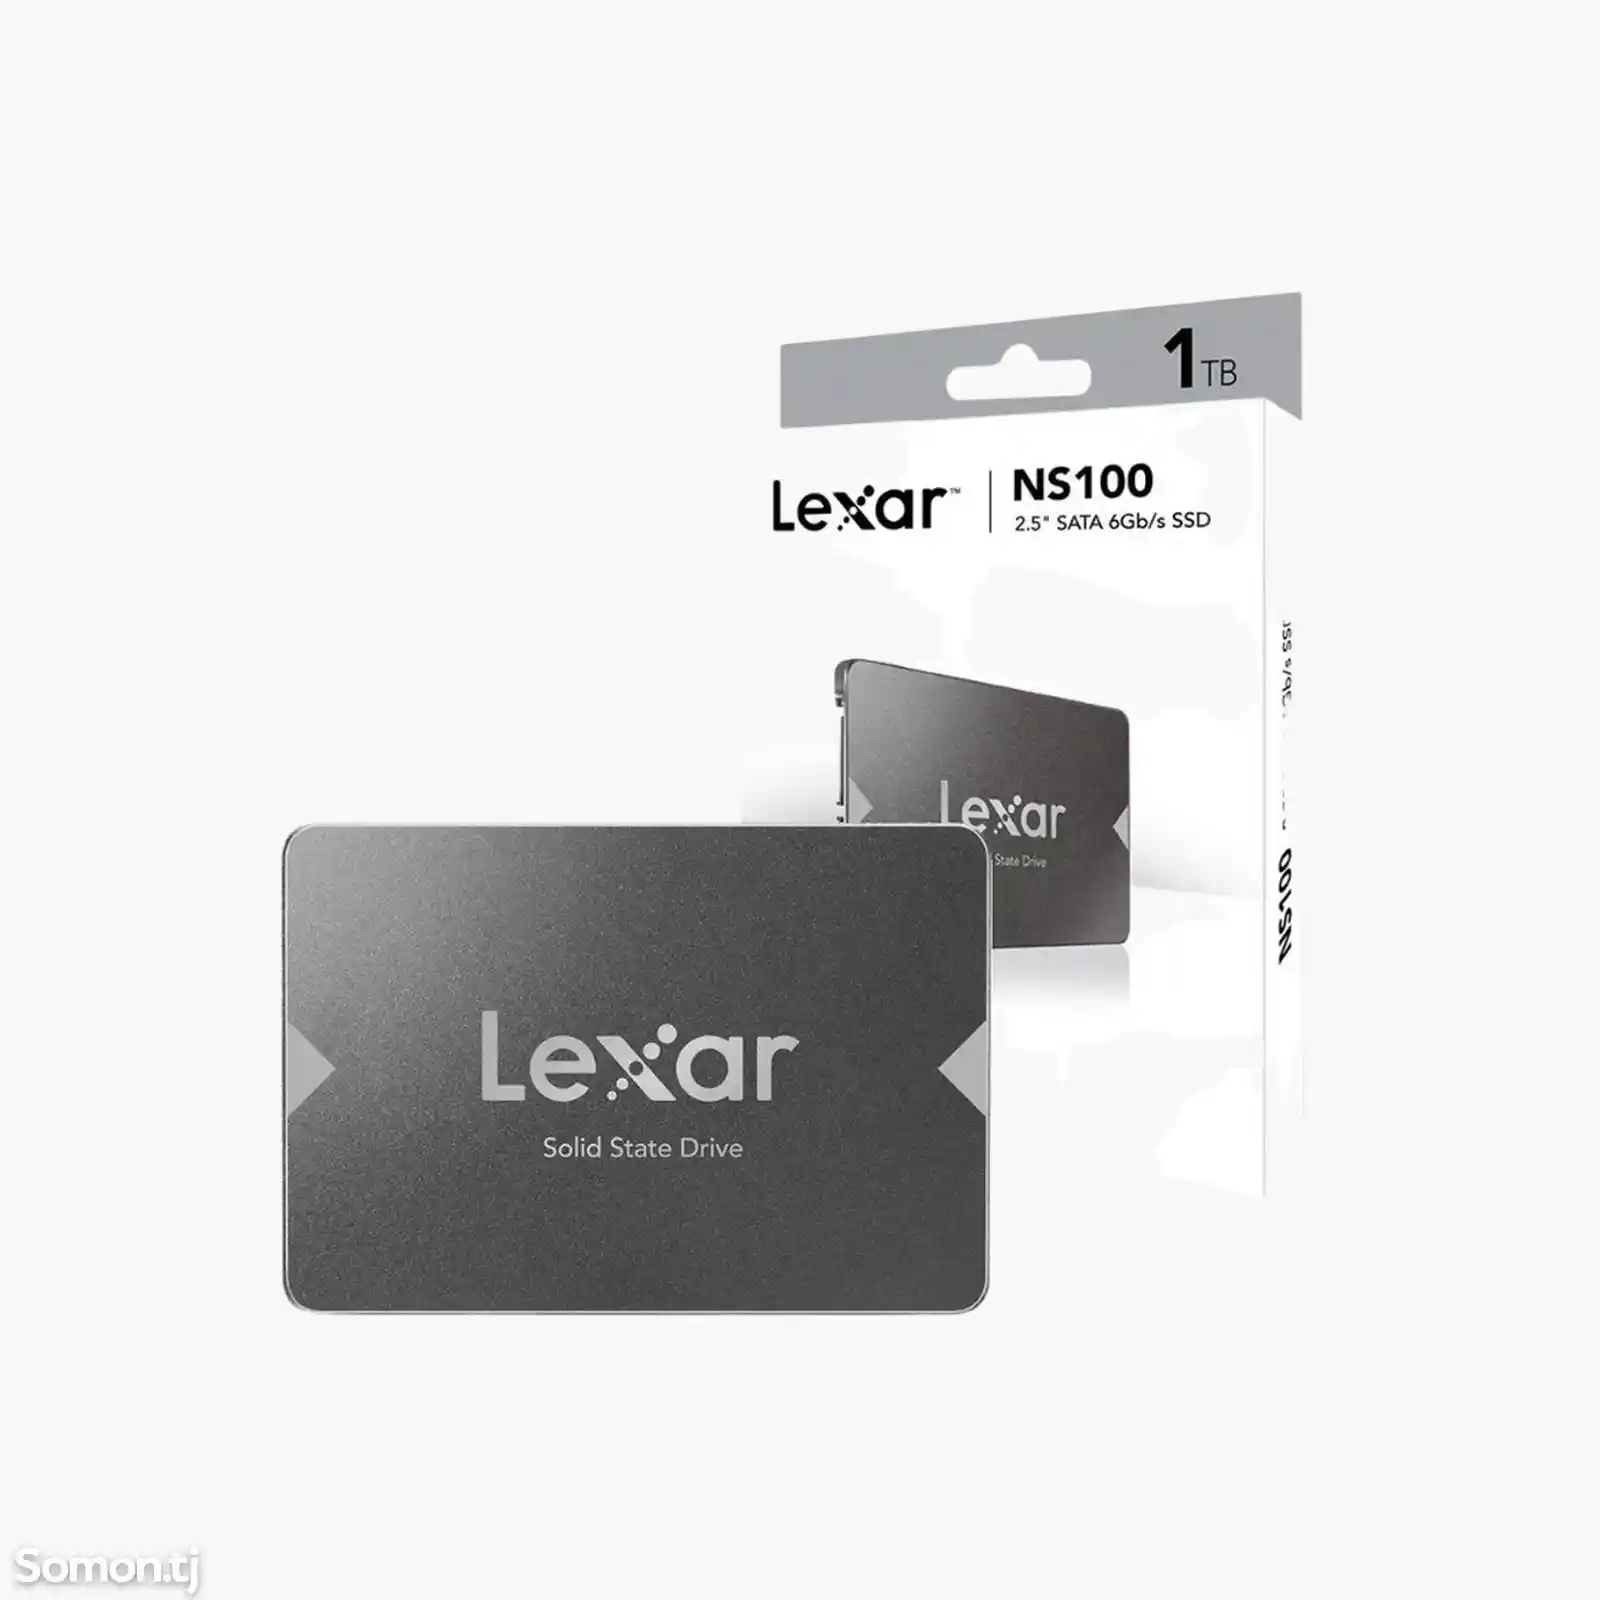 Внутренний SSD накопитель Lexar NS100, 1TB-2